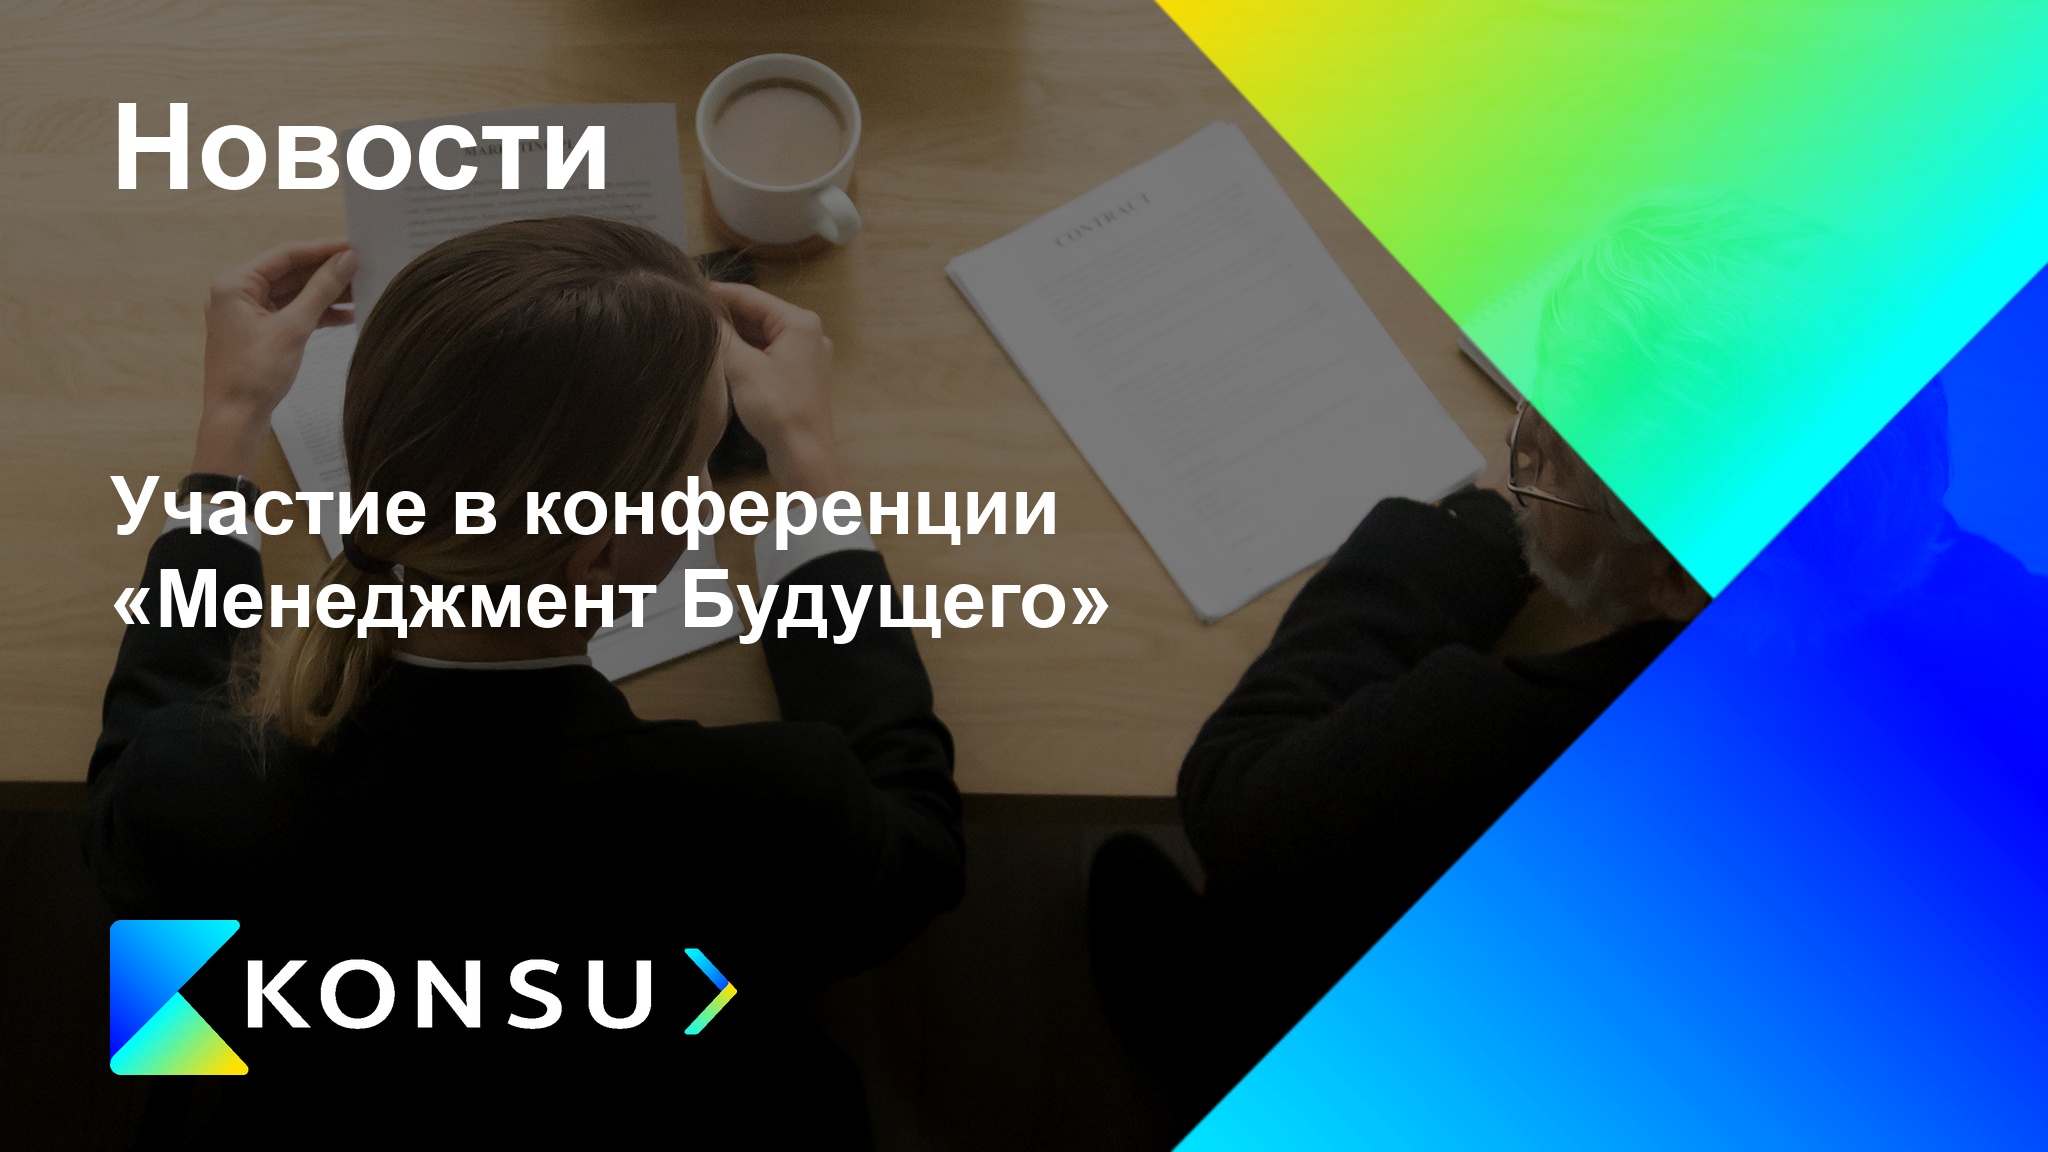 Uchastie konferentsii menedzhment buduschego ru konsu outsourcin (4)